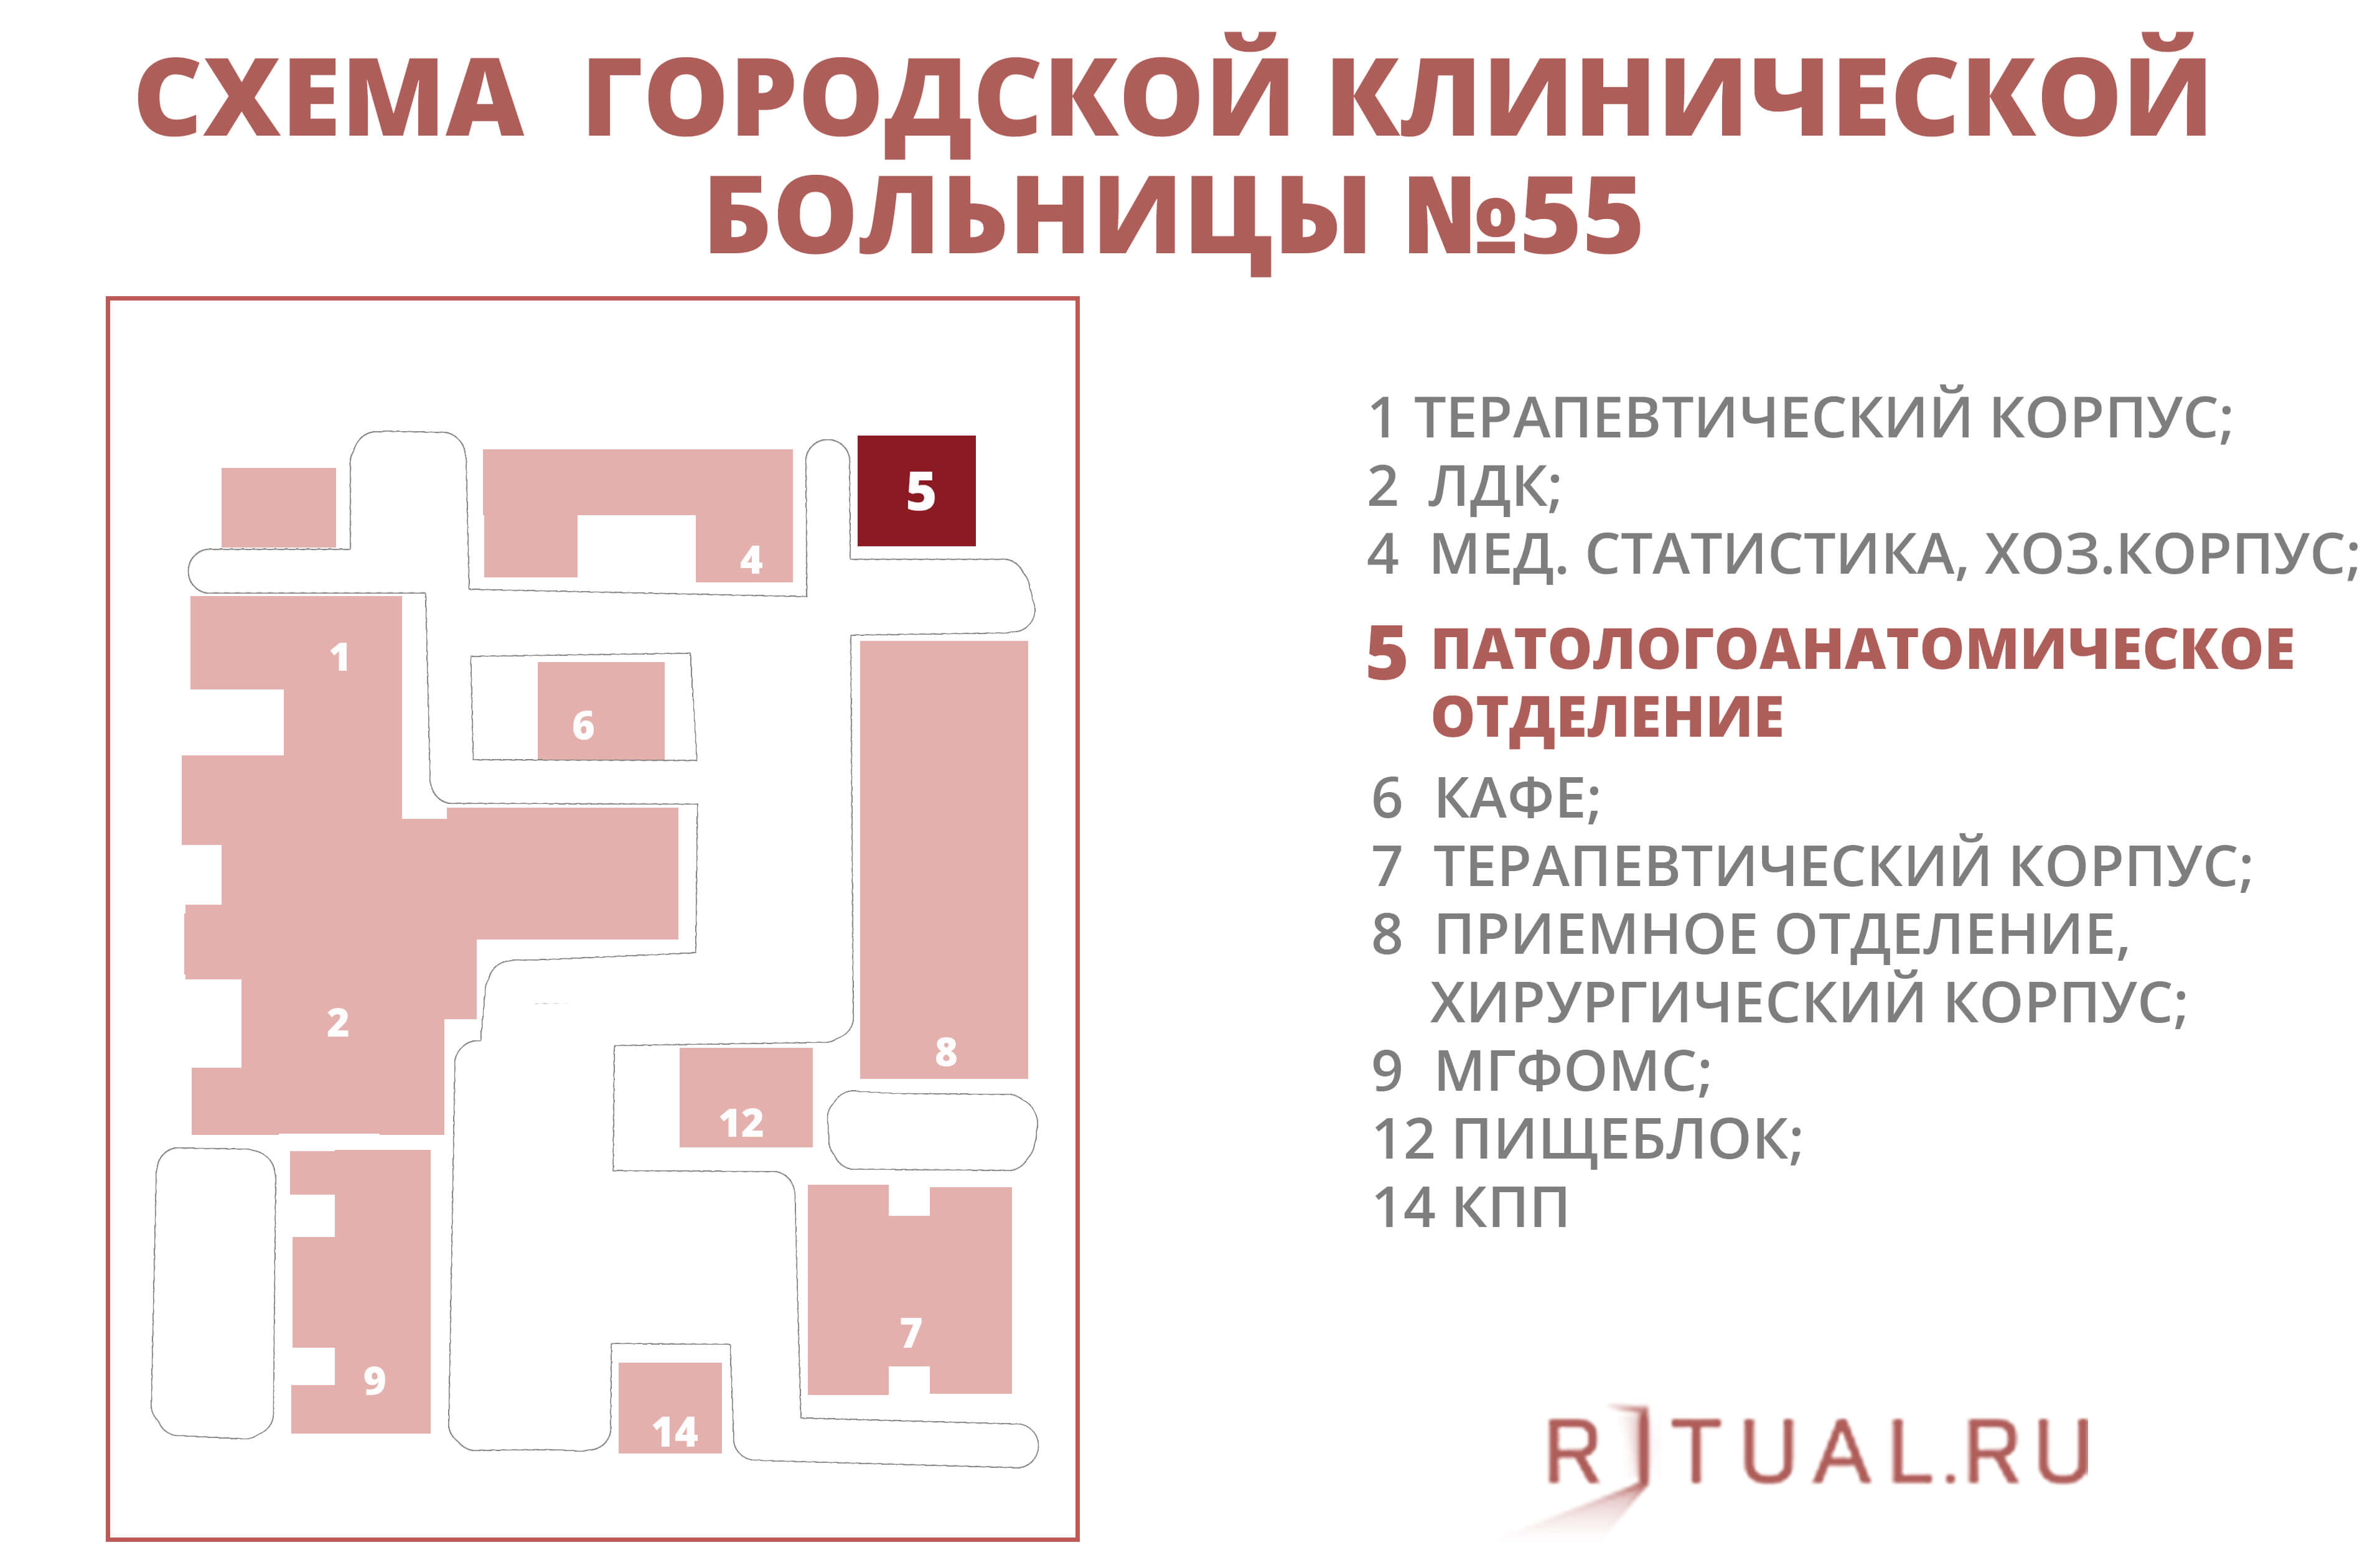 Карта 15 больницы. Больница 52 Москва план больницы. 67 Городская больница схема корпусов. План 67 больницы Москва расположение корпусов. Схема городской клинической больницы 67 Москва.